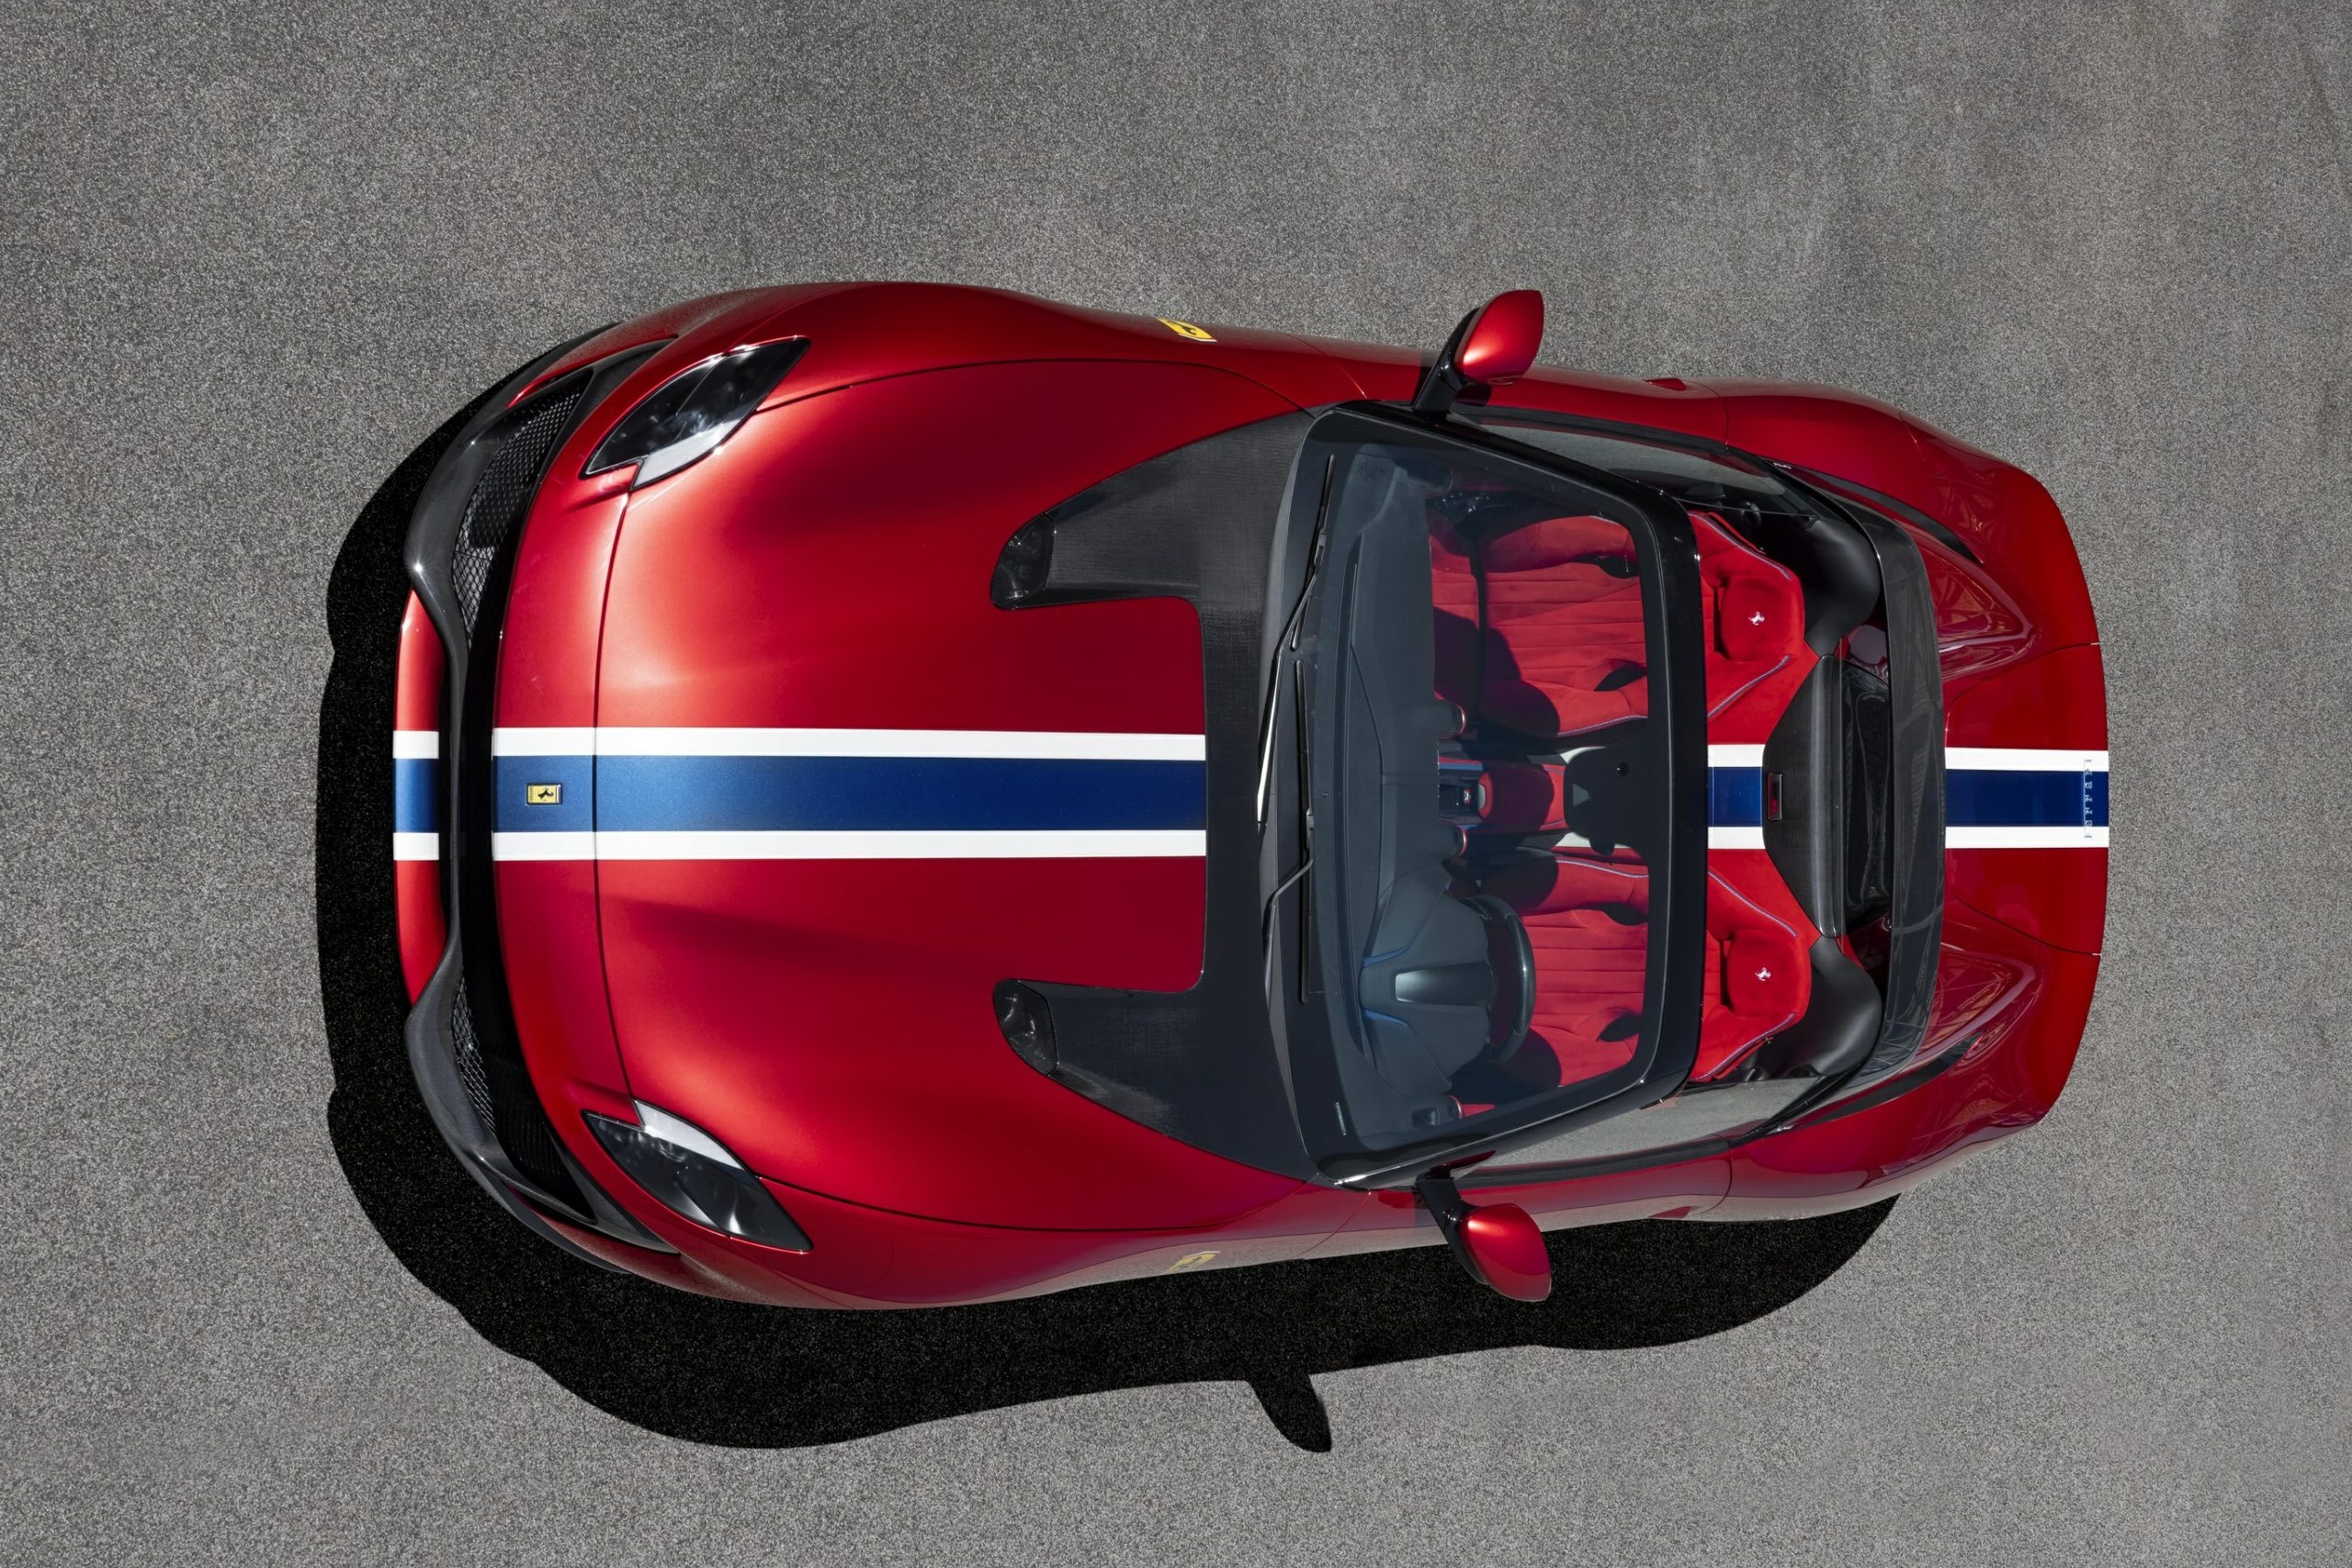 Cận cảnh siêu xe Ferrari SP51 độc nhất thế giới - ảnh 3